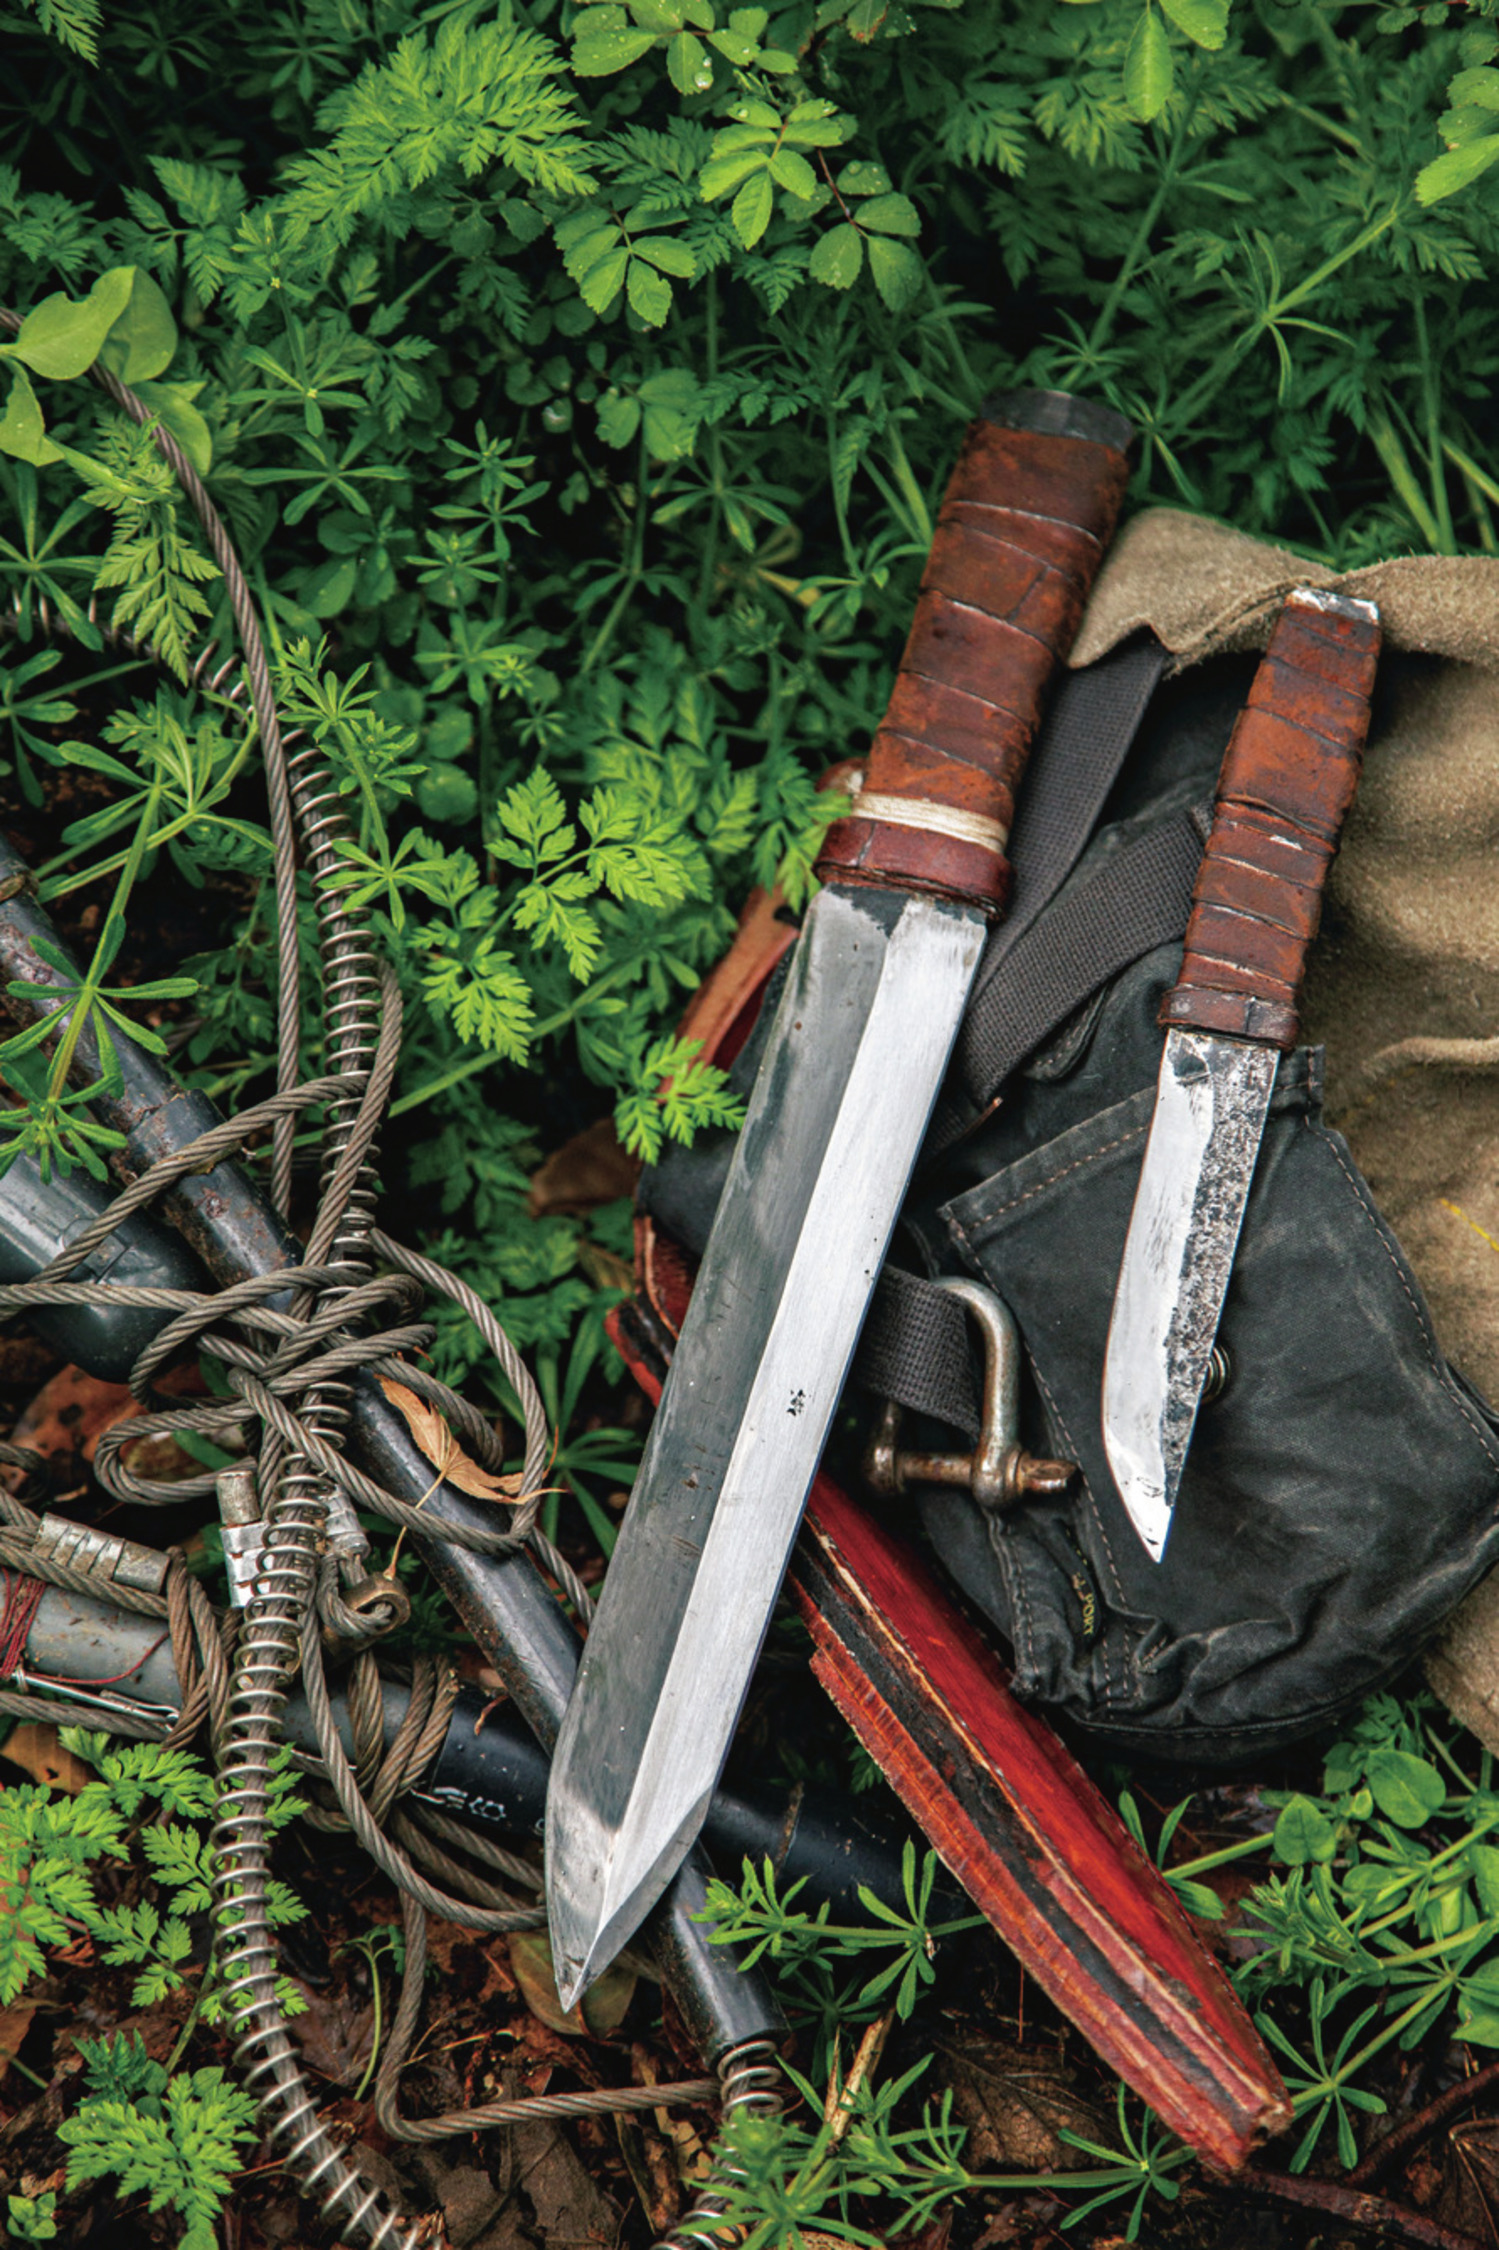 わな猟師 千松信也さんの愛用ナイフを公開 刃物 マルチツール Be Pal キャンプ アウトドア 自然派生活の情報源ビーパル